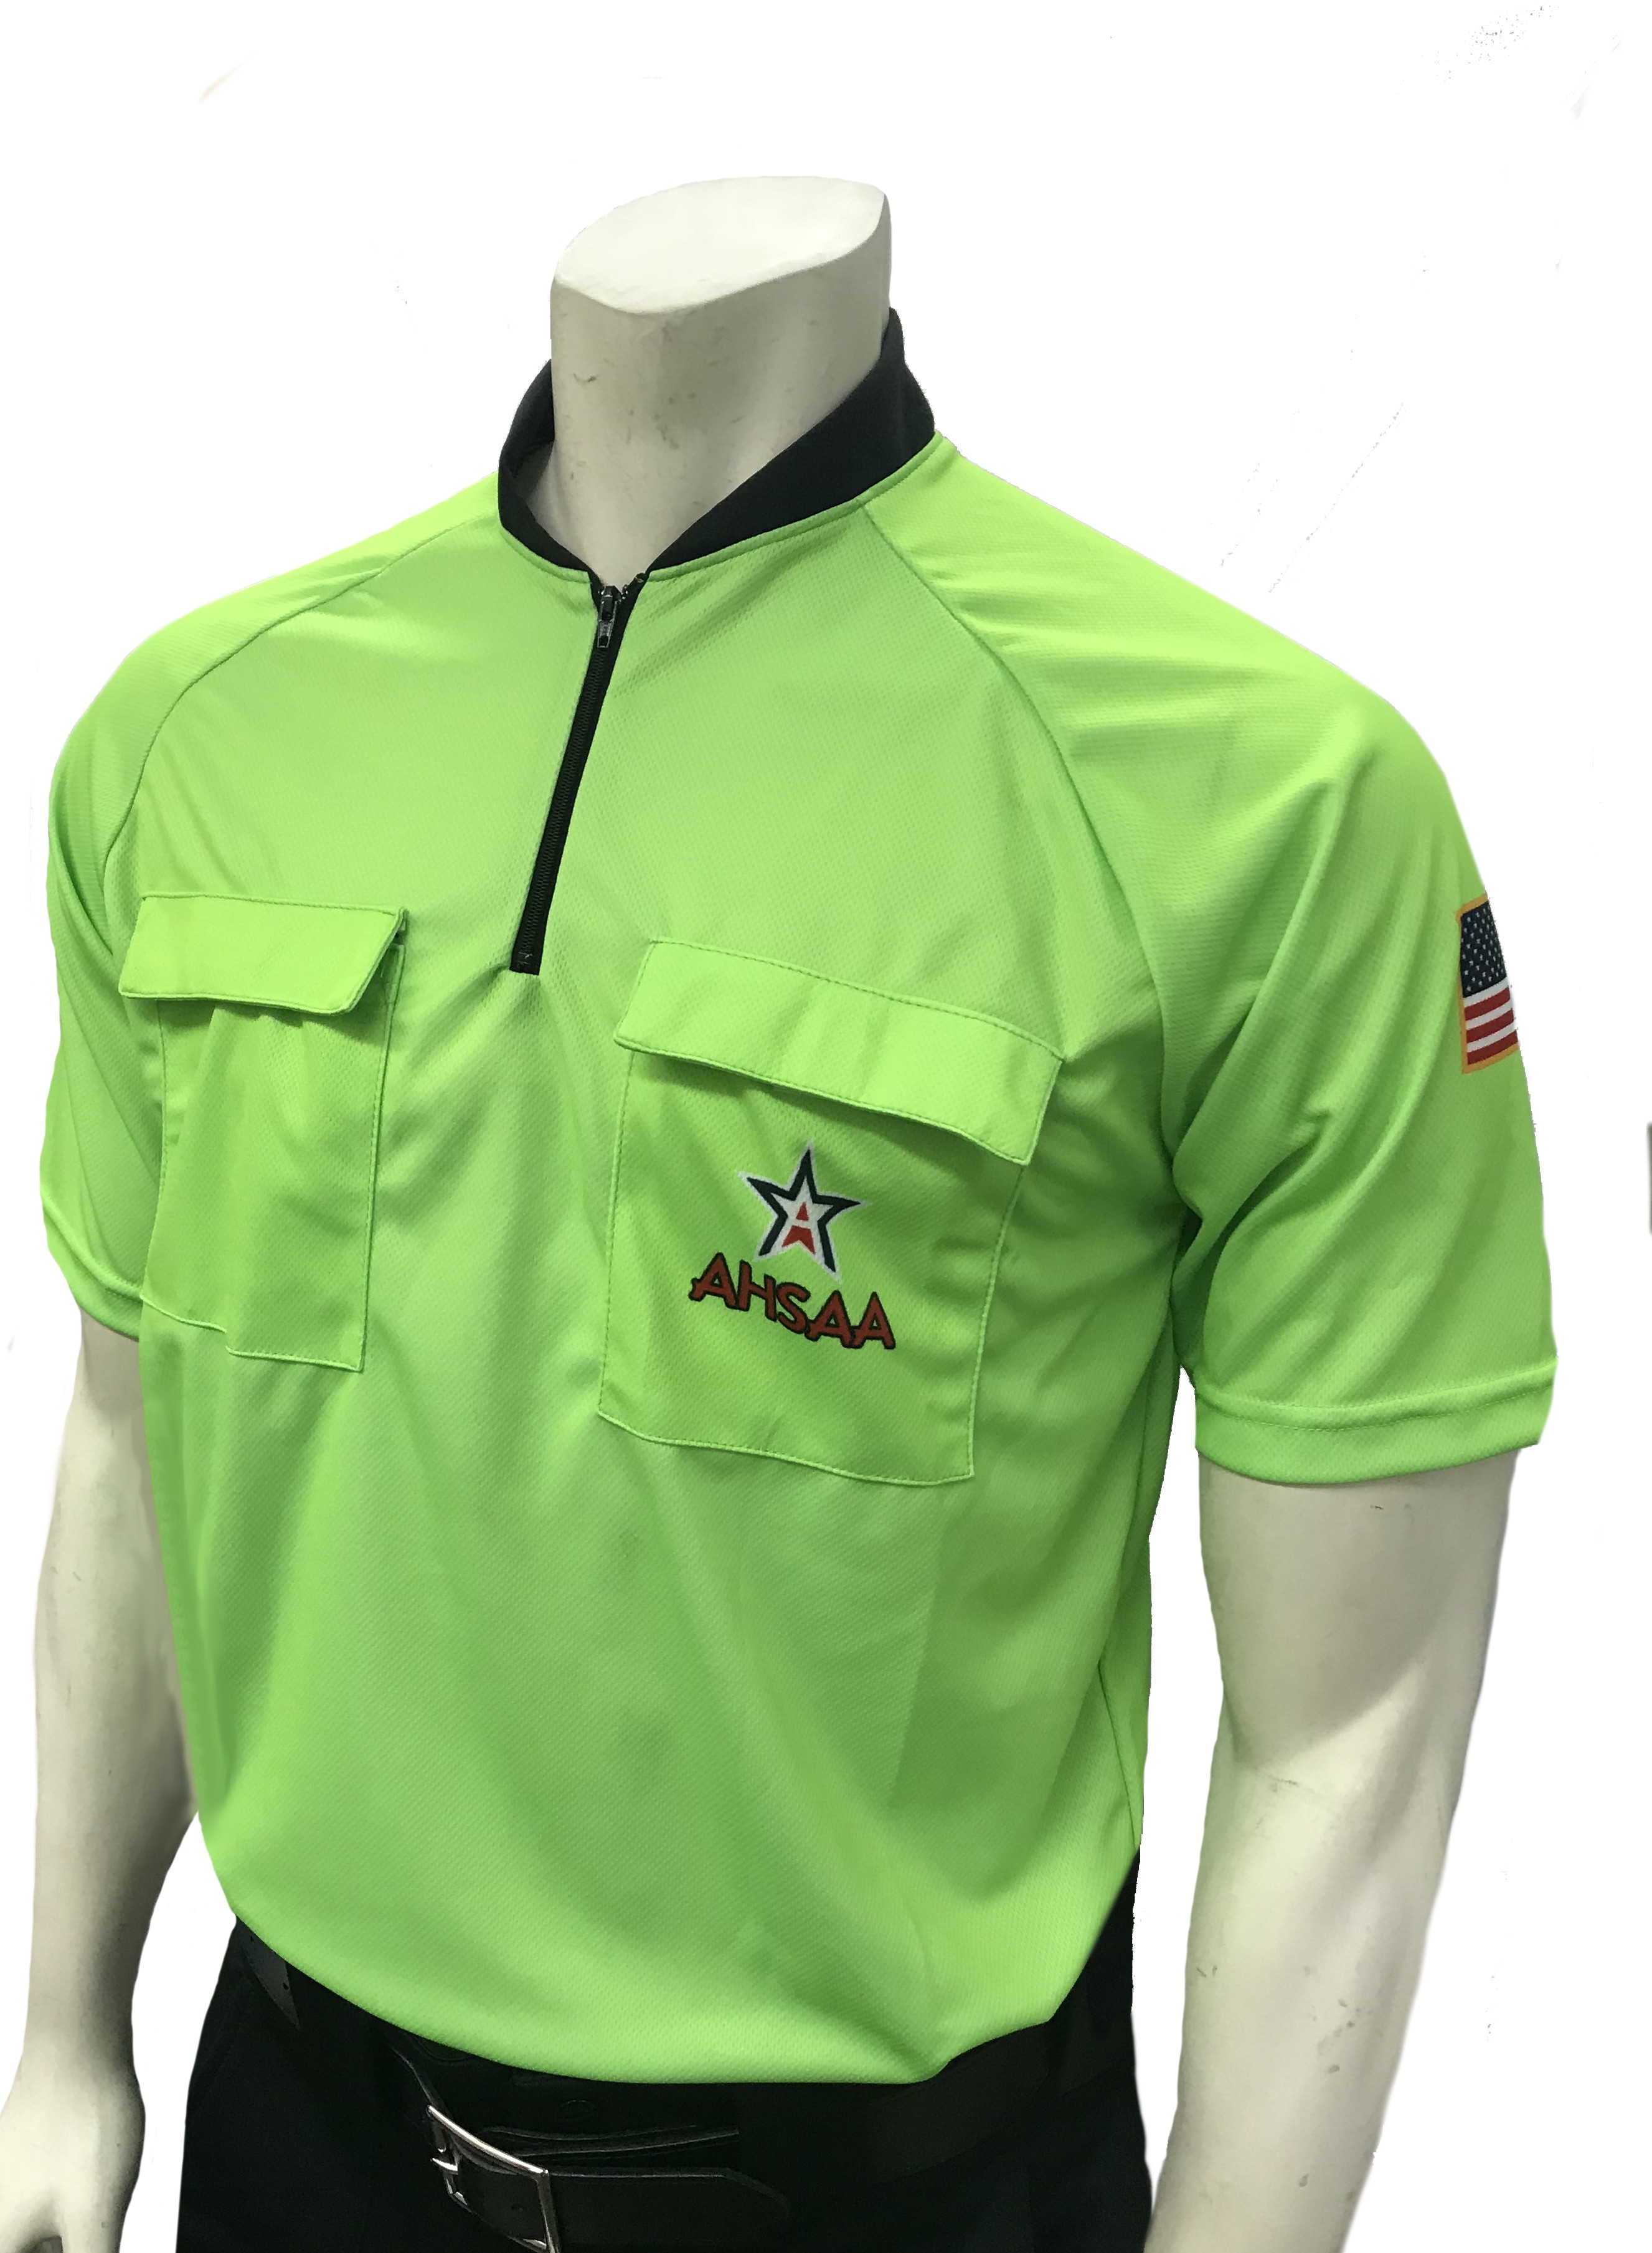 AHSAA Star Logo Short Sleeve Men's Soccer Shirt (Fluorescent Green)